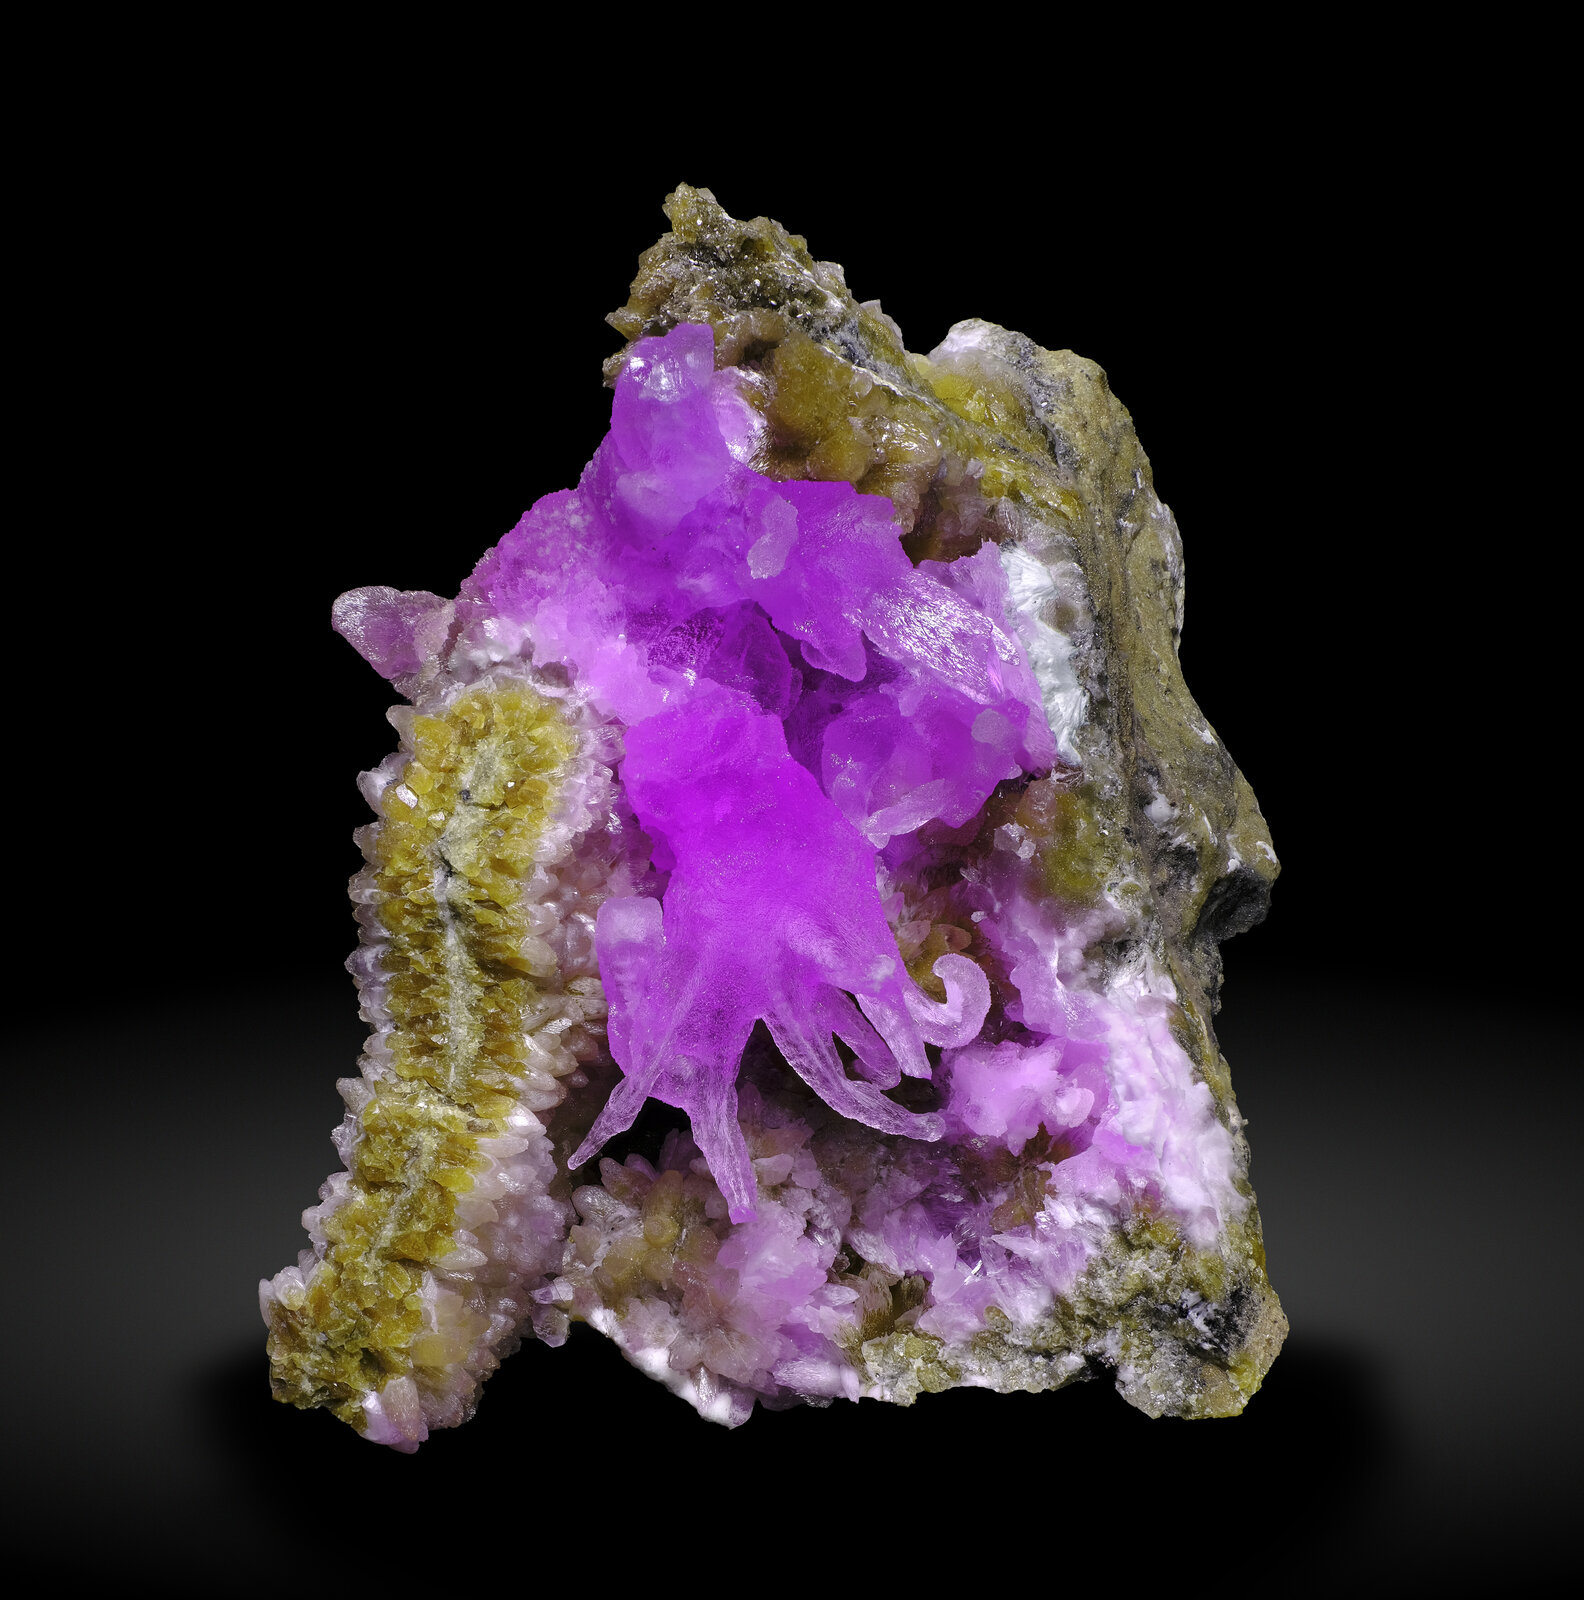 specimens/s_imagesAP1/Calcite-EXF92AP1_2943_f.jpg